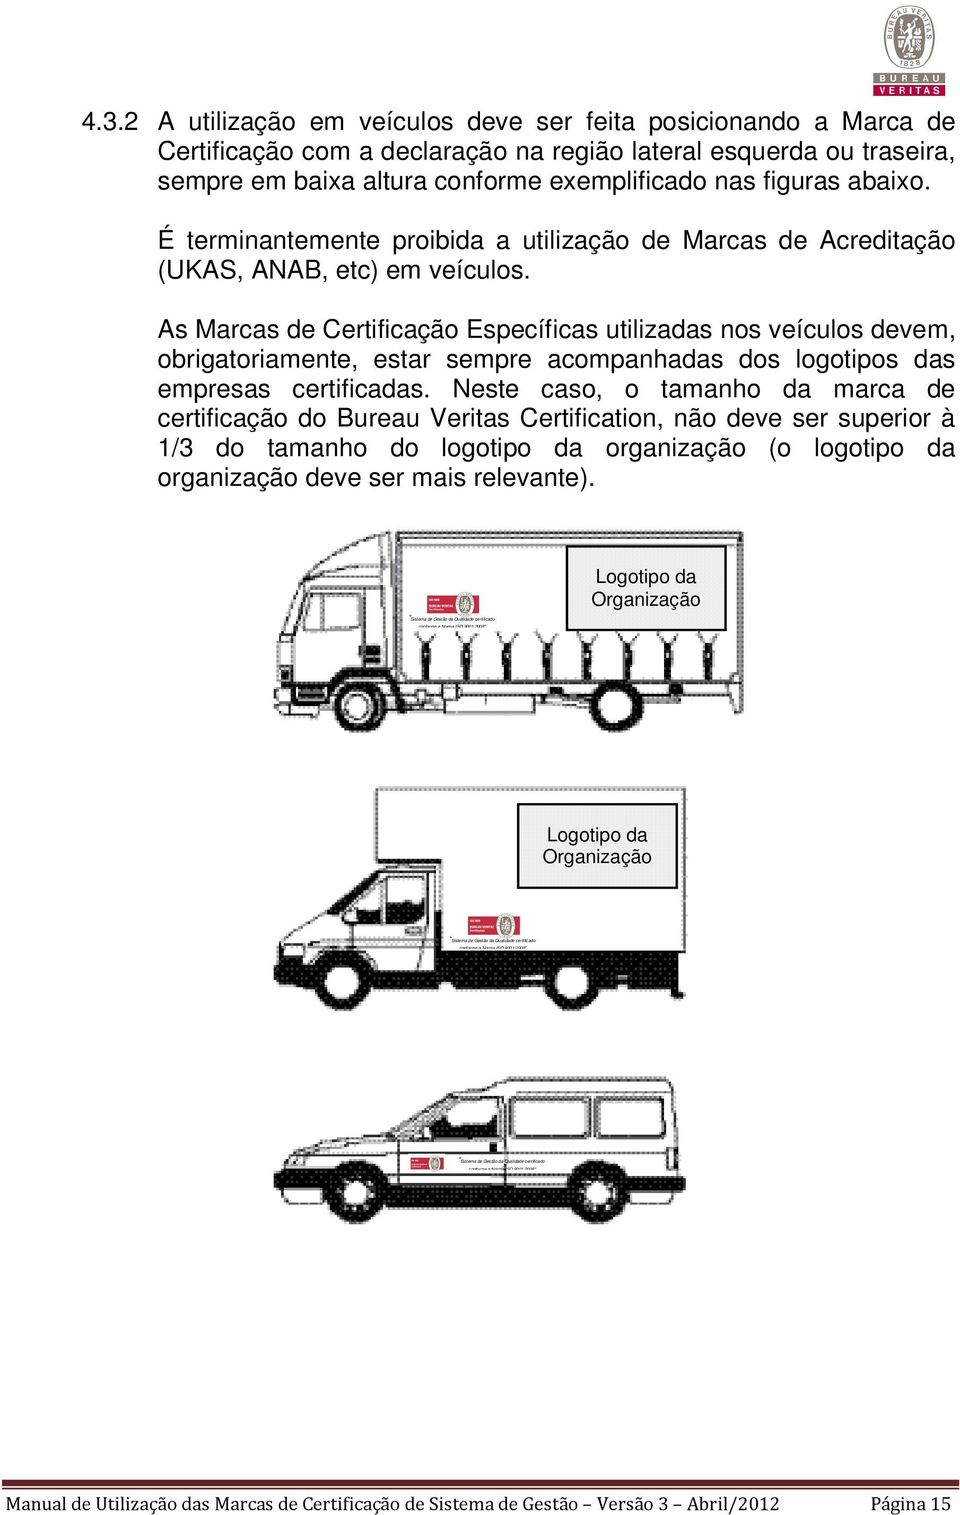 As Marcas de Certificação Específicas utilizadas nos veículos devem, obrigatoriamente, estar sempre acompanhadas dos logotipos das empresas certificadas.